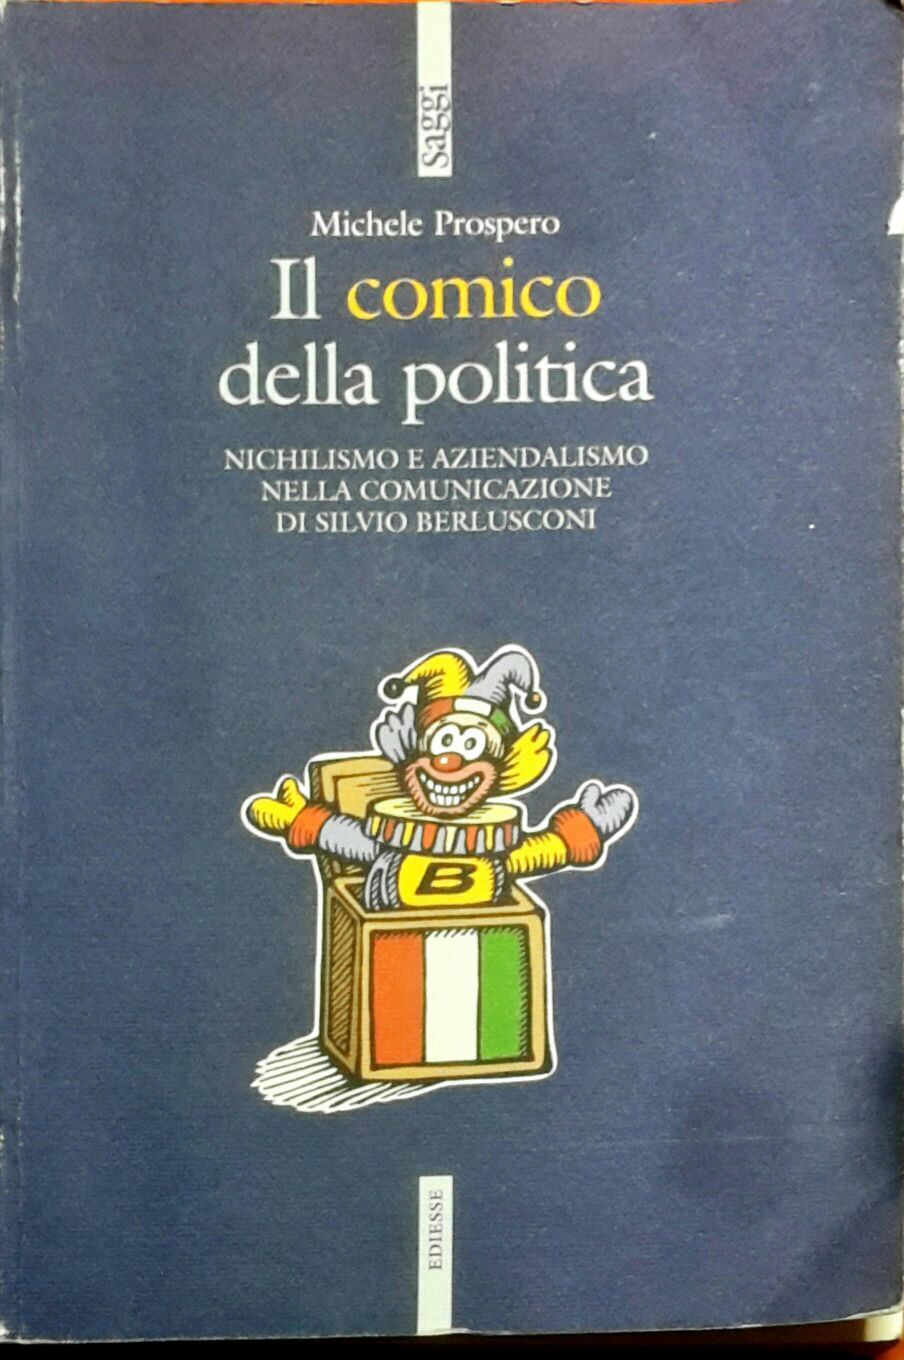 Il comico della politica - Michele Prospero - Ediesse -N libro usato